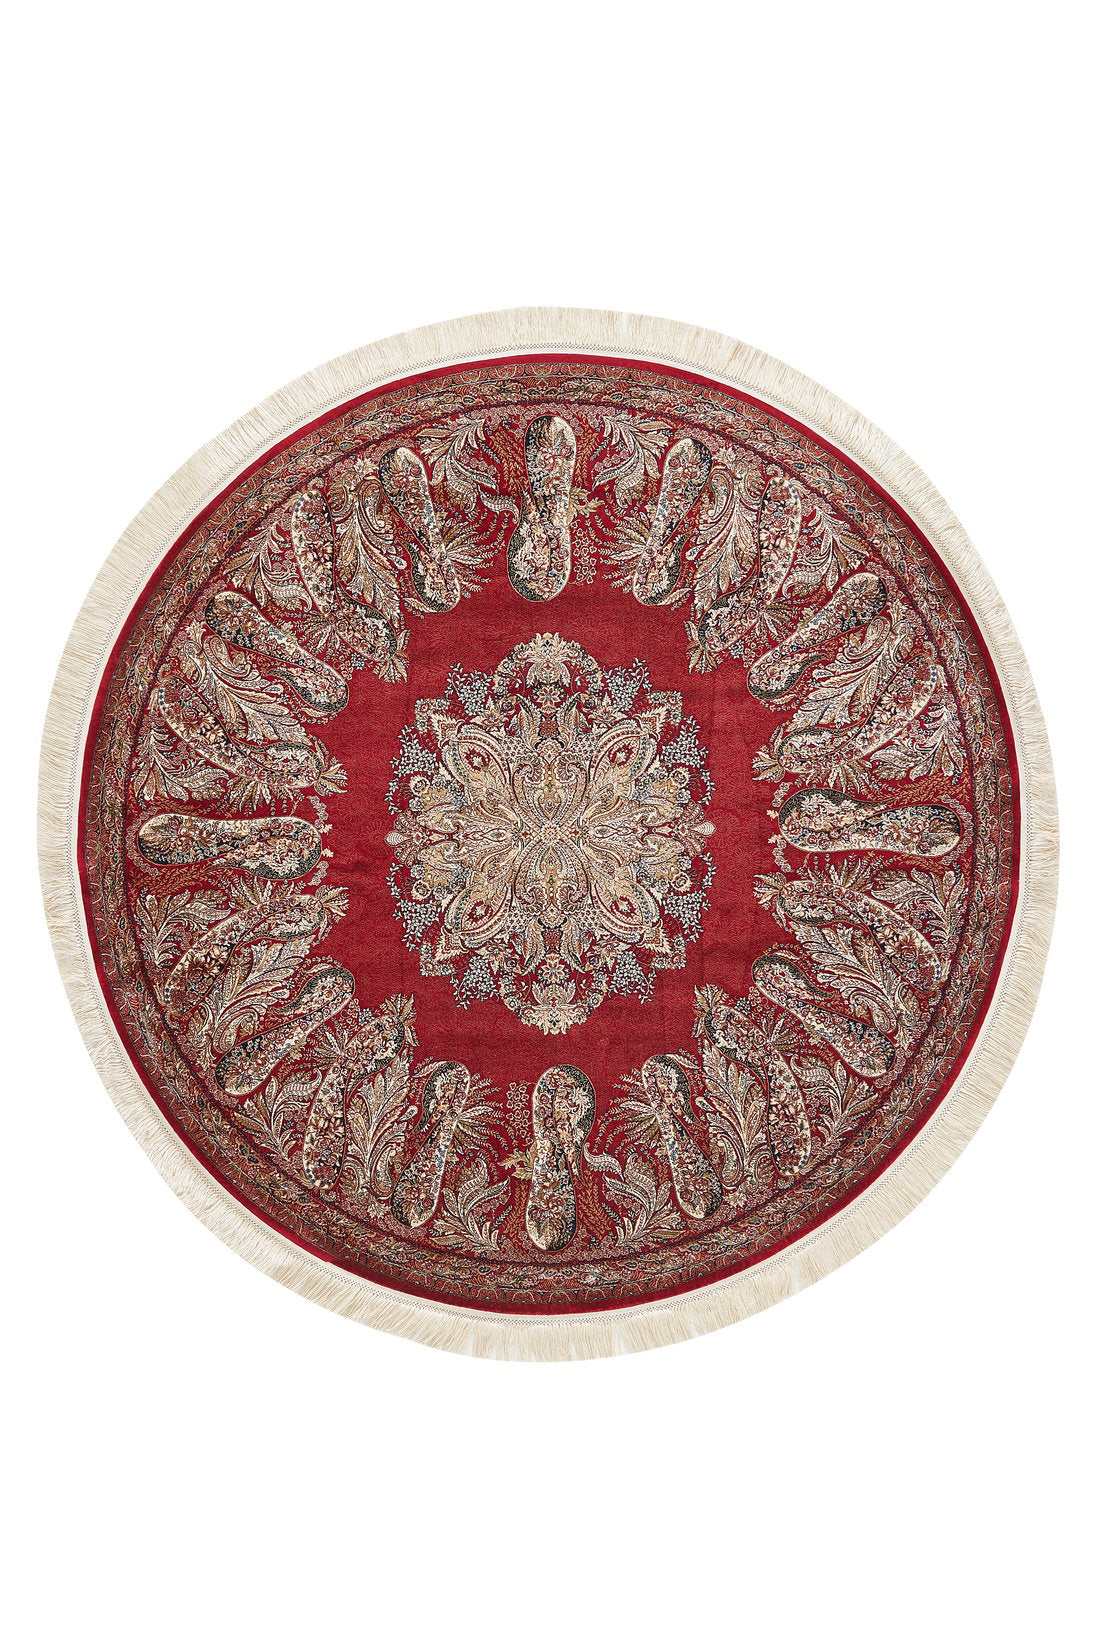 Old World Floral Turkish Rug - Crimson - 2219H